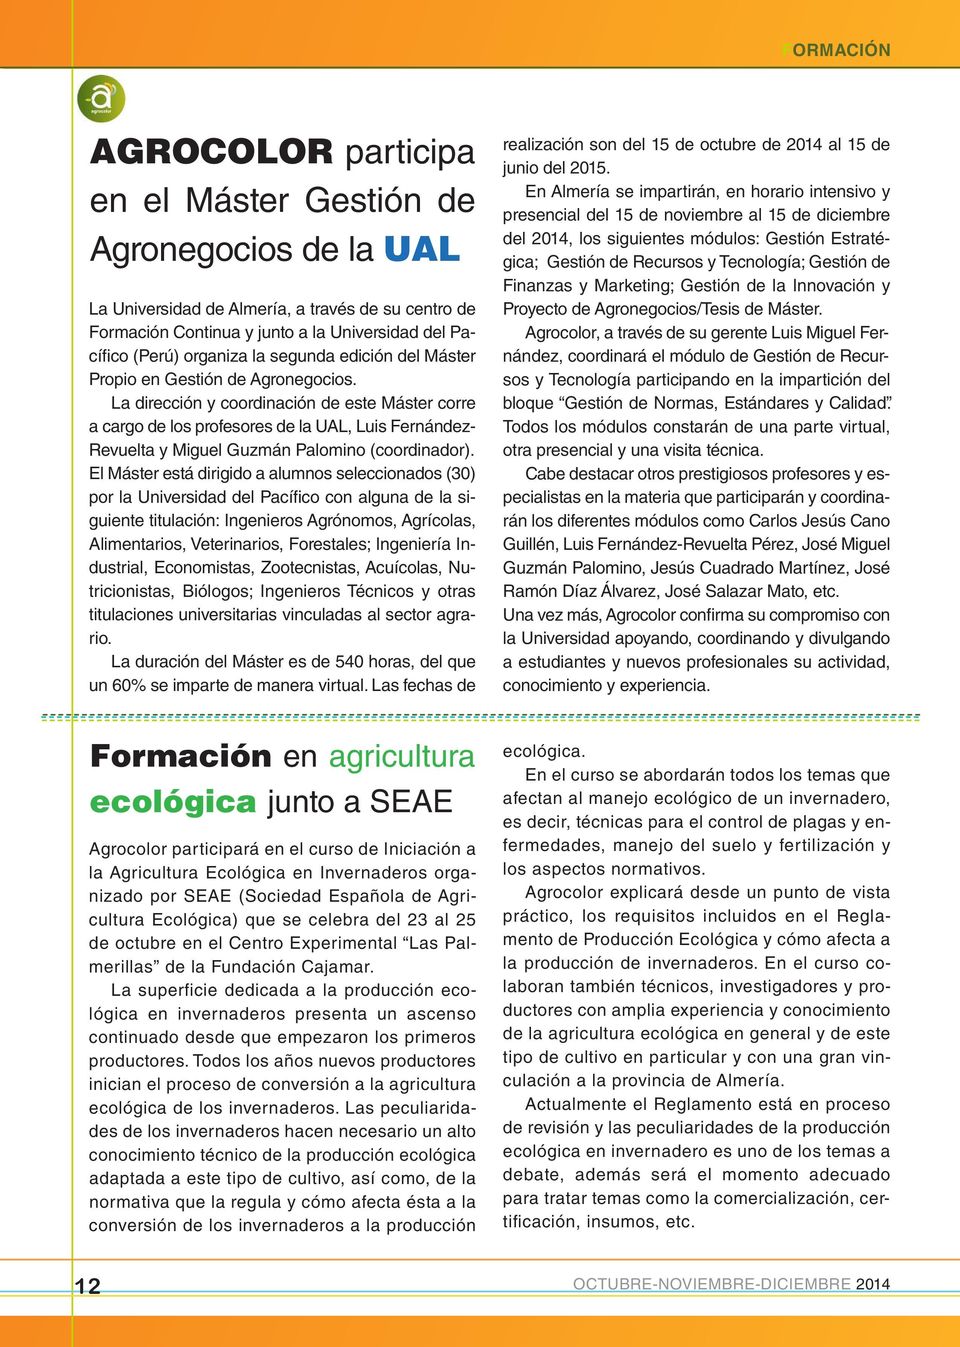 La dirección y coordinación de este Máster corre a cargo de los profesores de la UAL, Luis Fernández- Revuelta y Miguel Guzmán Palomino (coordinador).